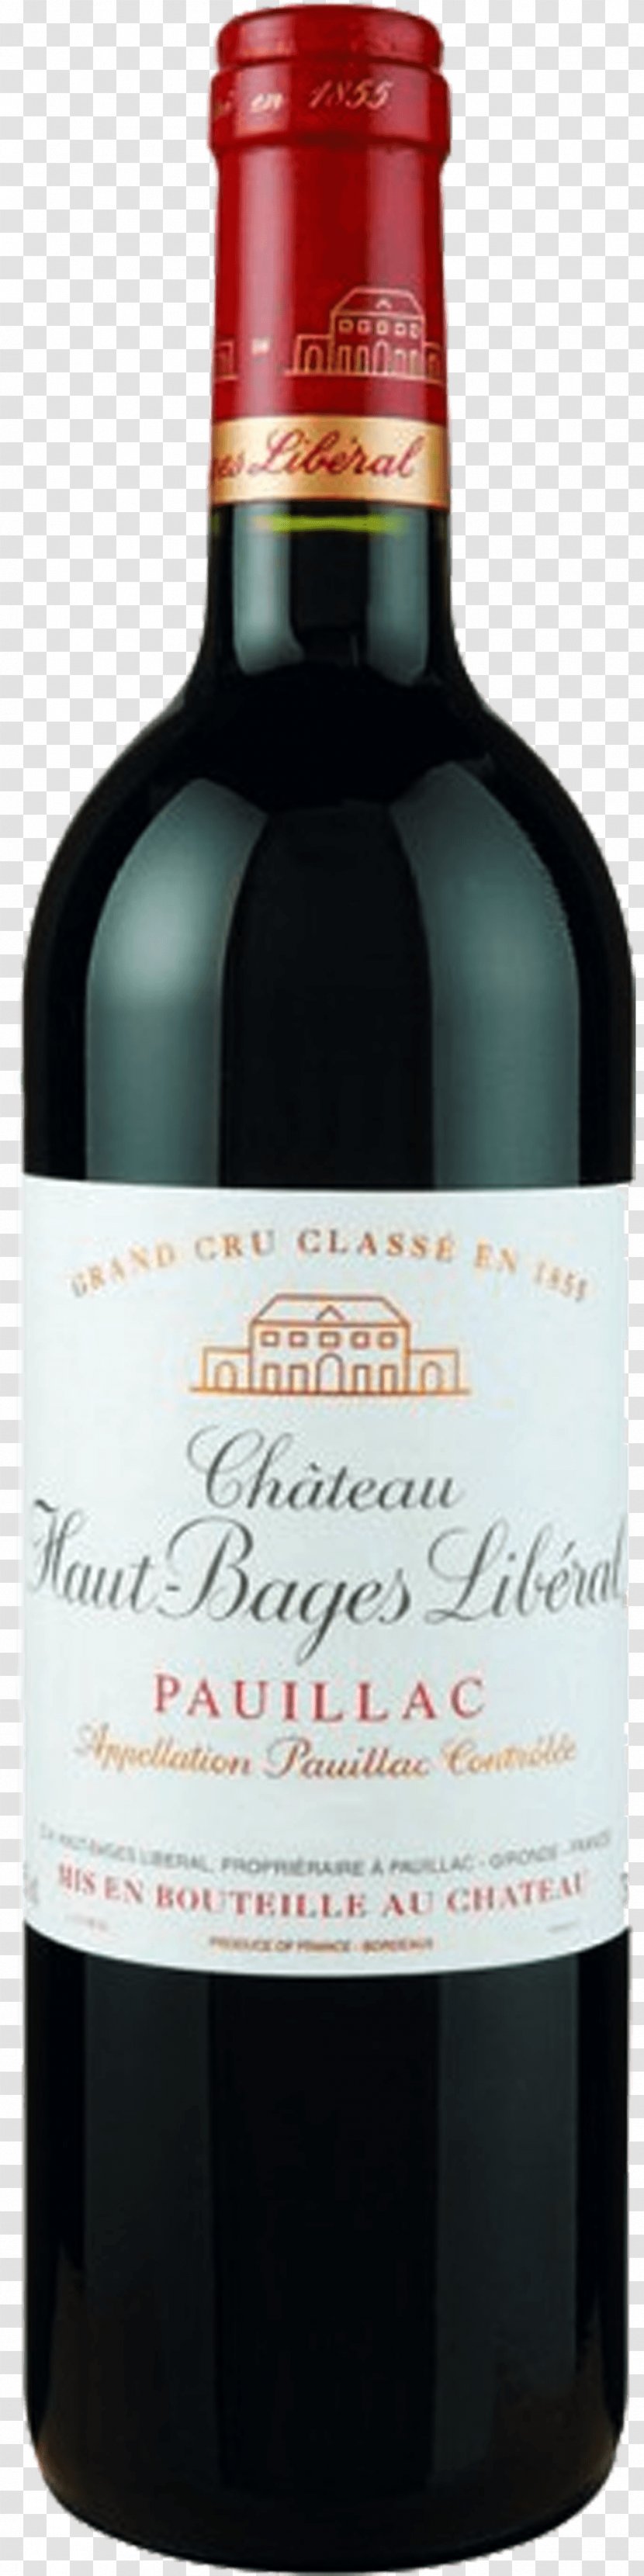 Château Haut-Brion Saint-Estèphe AOC Saint-Émilion Wine Cabernet Sauvignon - Bottle Transparent PNG